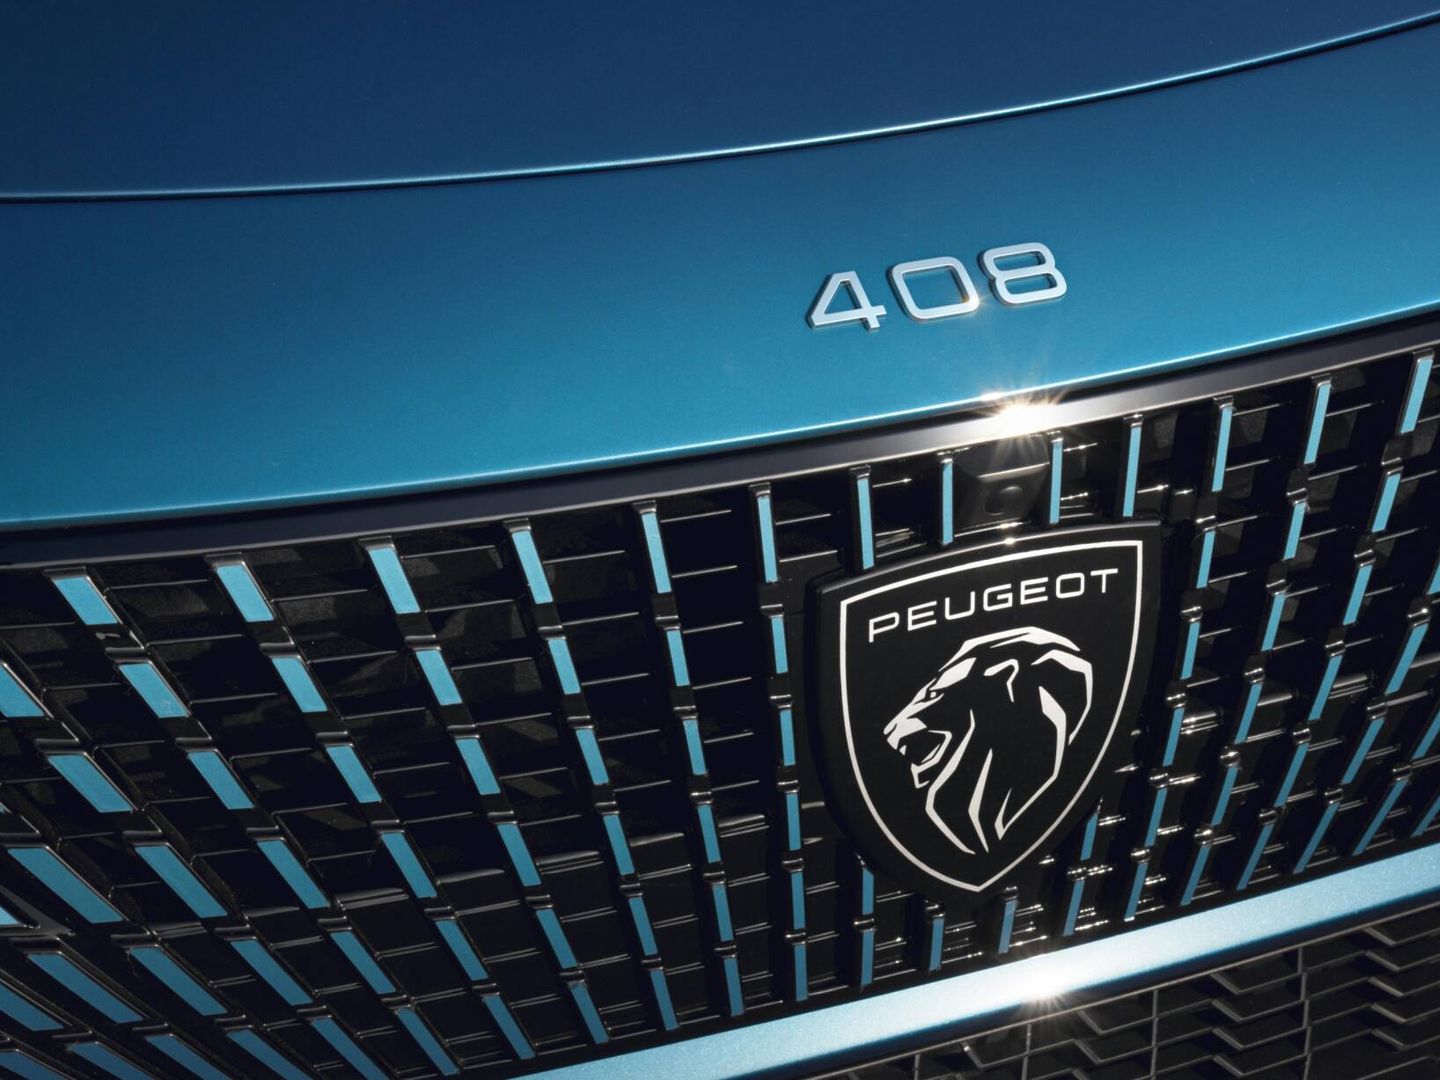 El nuevo emblema de Peugeot, implantado en 2021, ya incluye el nombre de la marca.